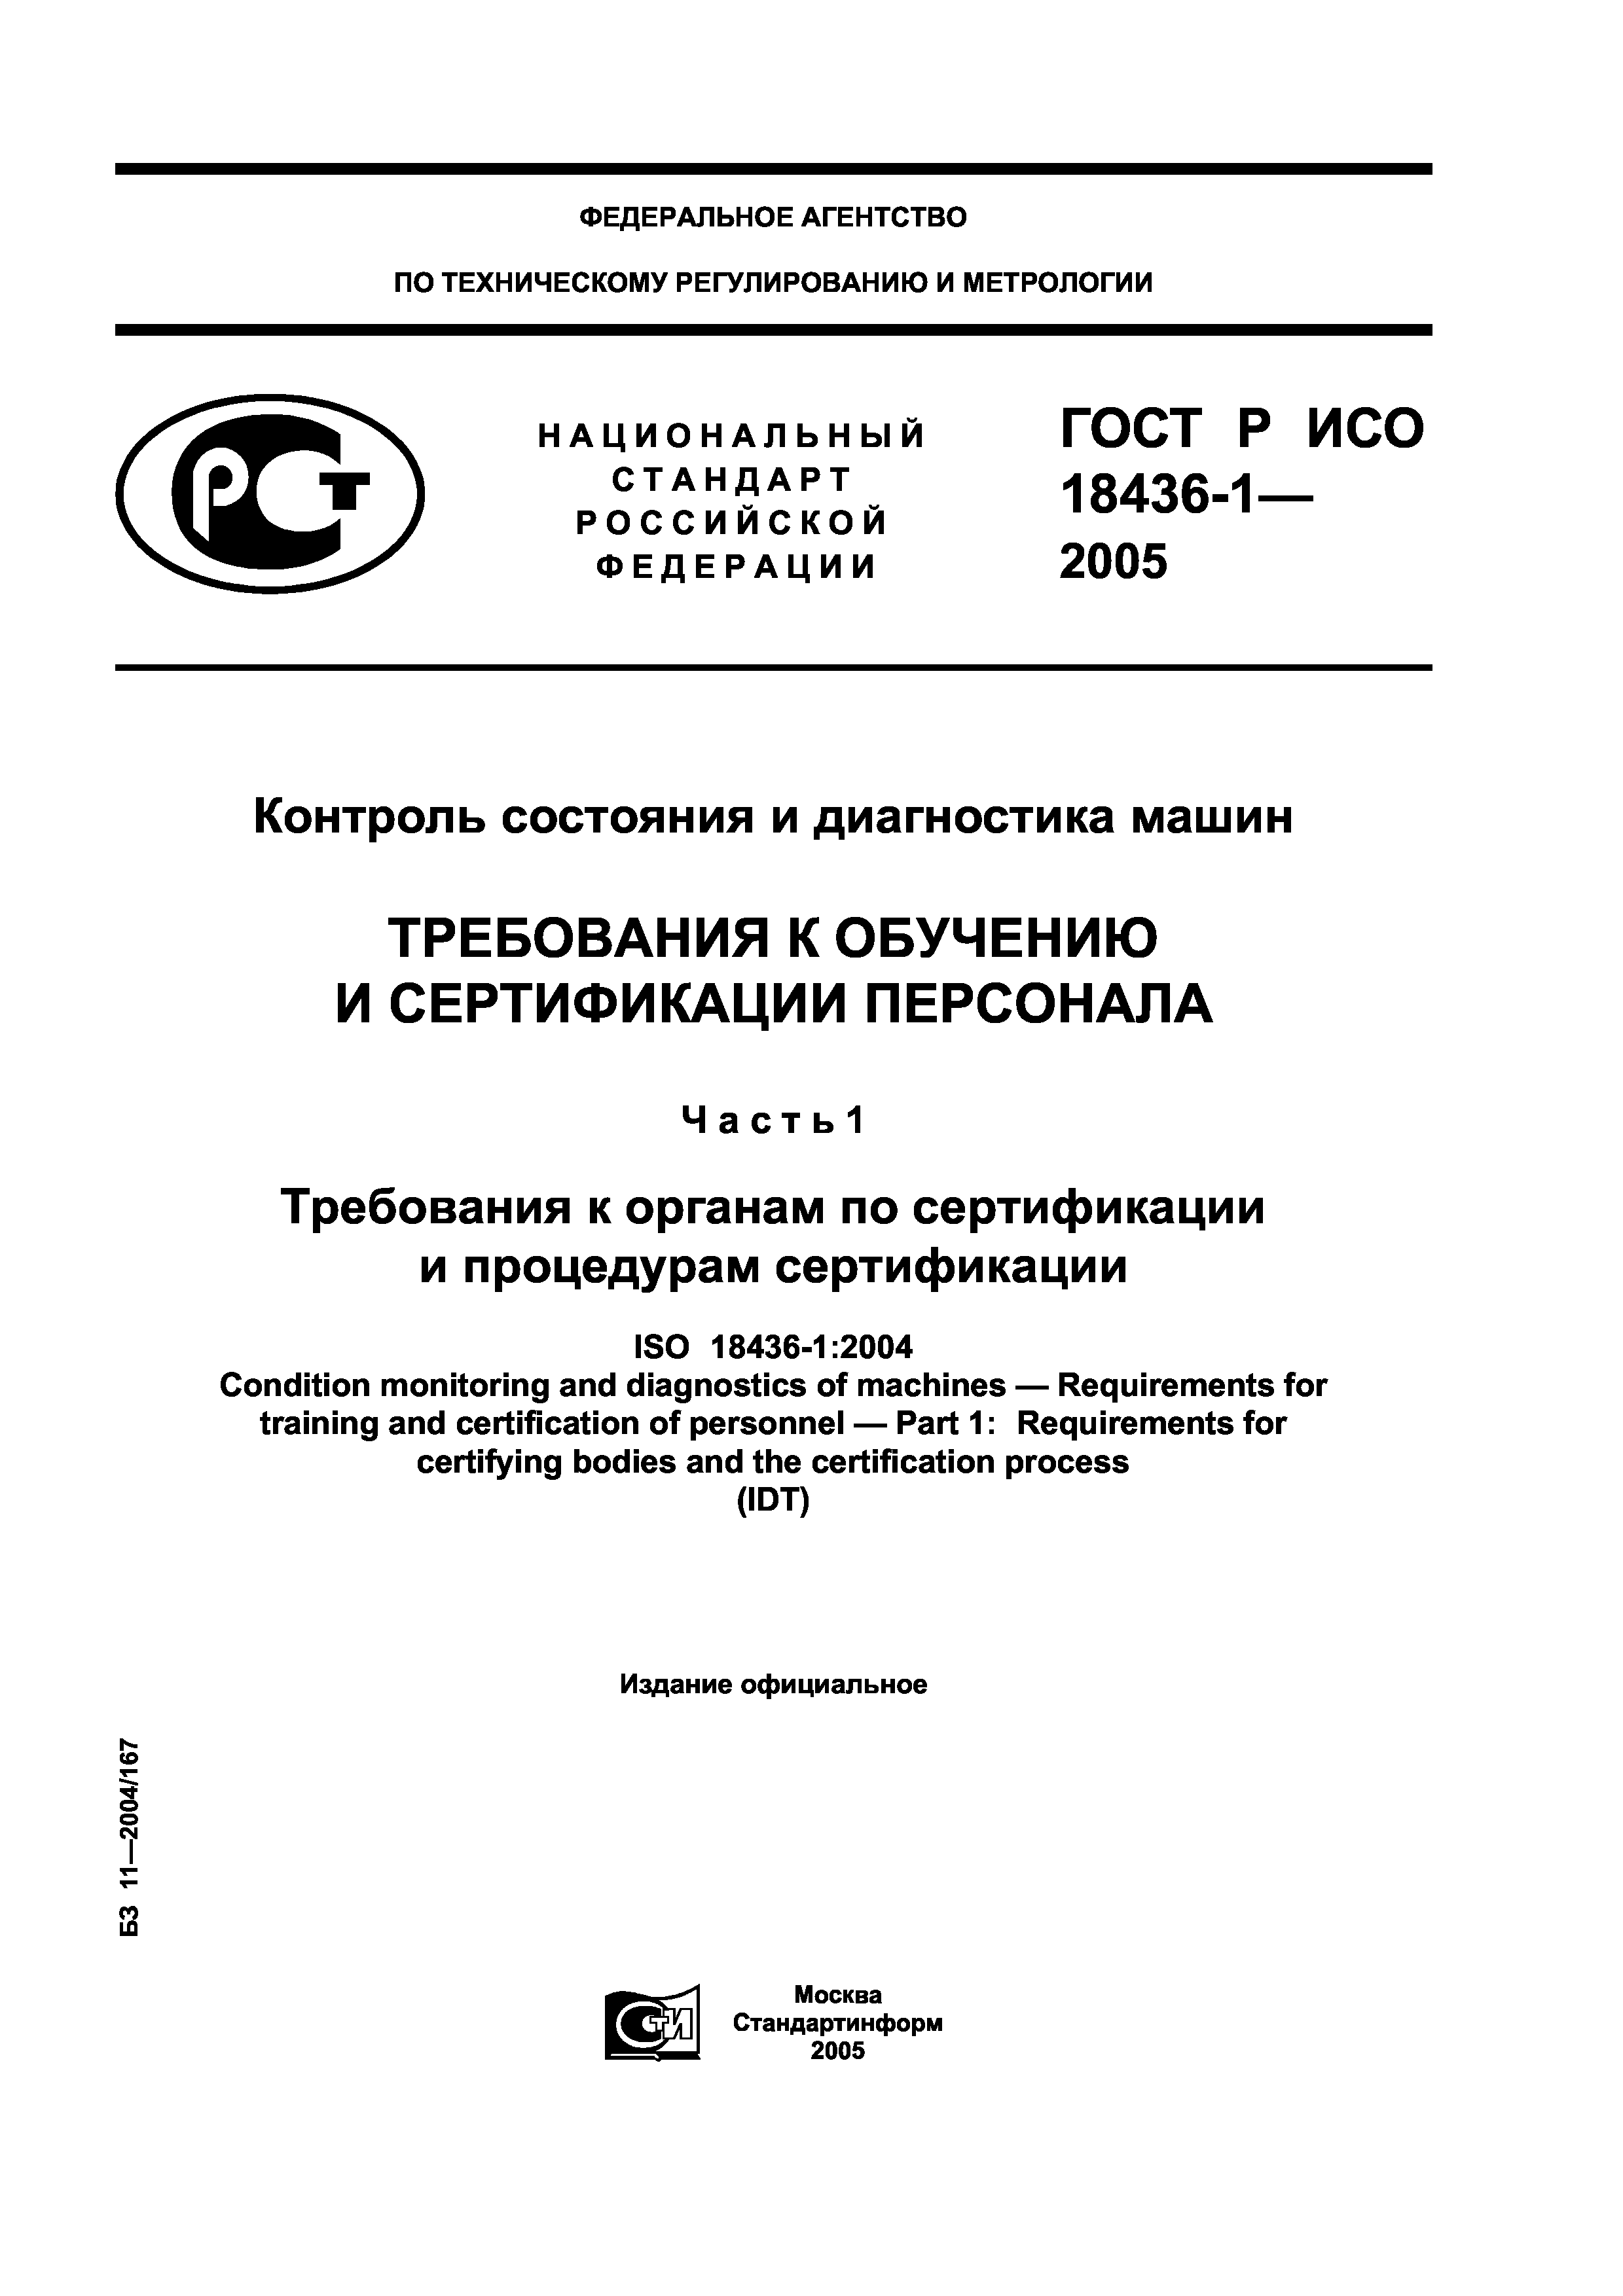 ГОСТ Р ИСО 18436-1-2005